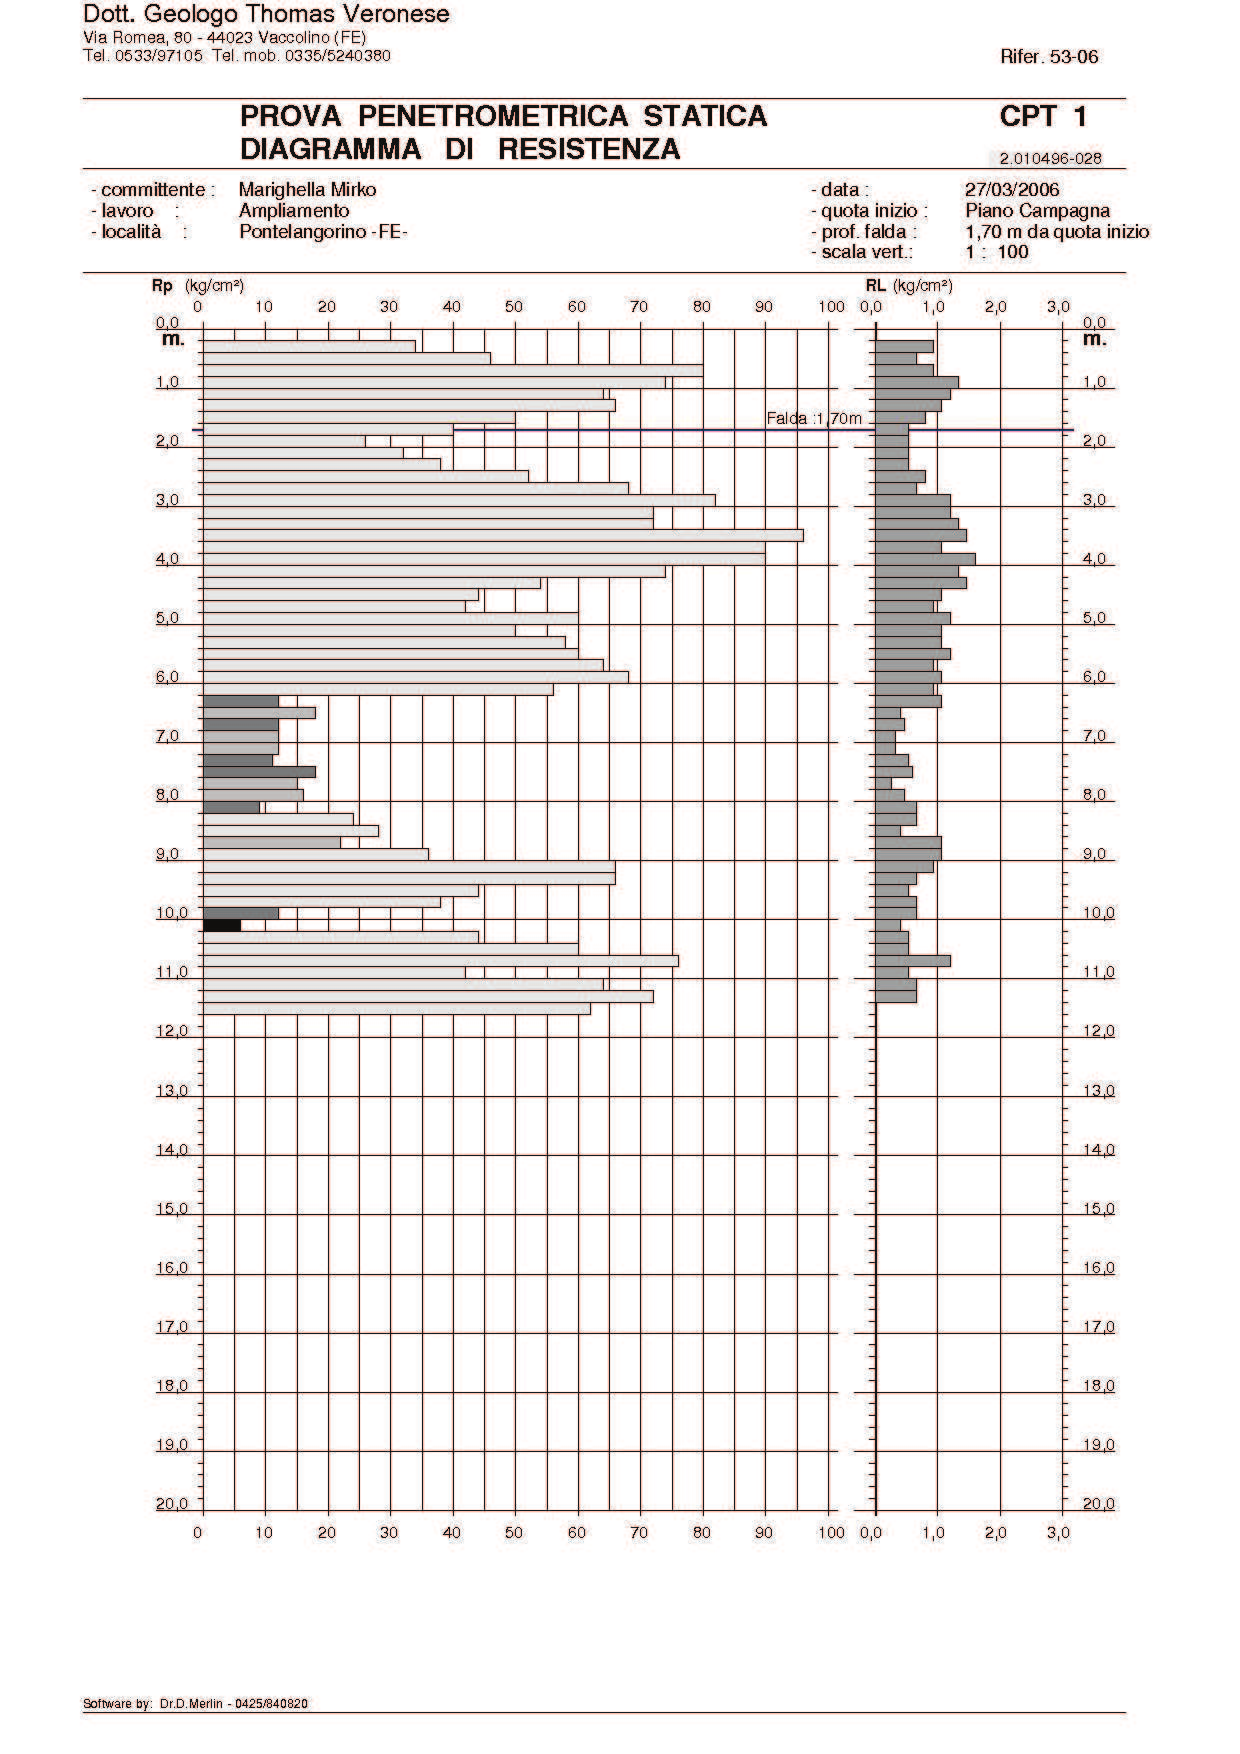 In FIGURA 10.1.7 viene riportato il diagramma di resistenza della prova penetrometrica statica bibliografica. FIGURA 10.1.7 - Diagramma di resistenza della prova penetrometrica bibliografica Nella Tabella 10.